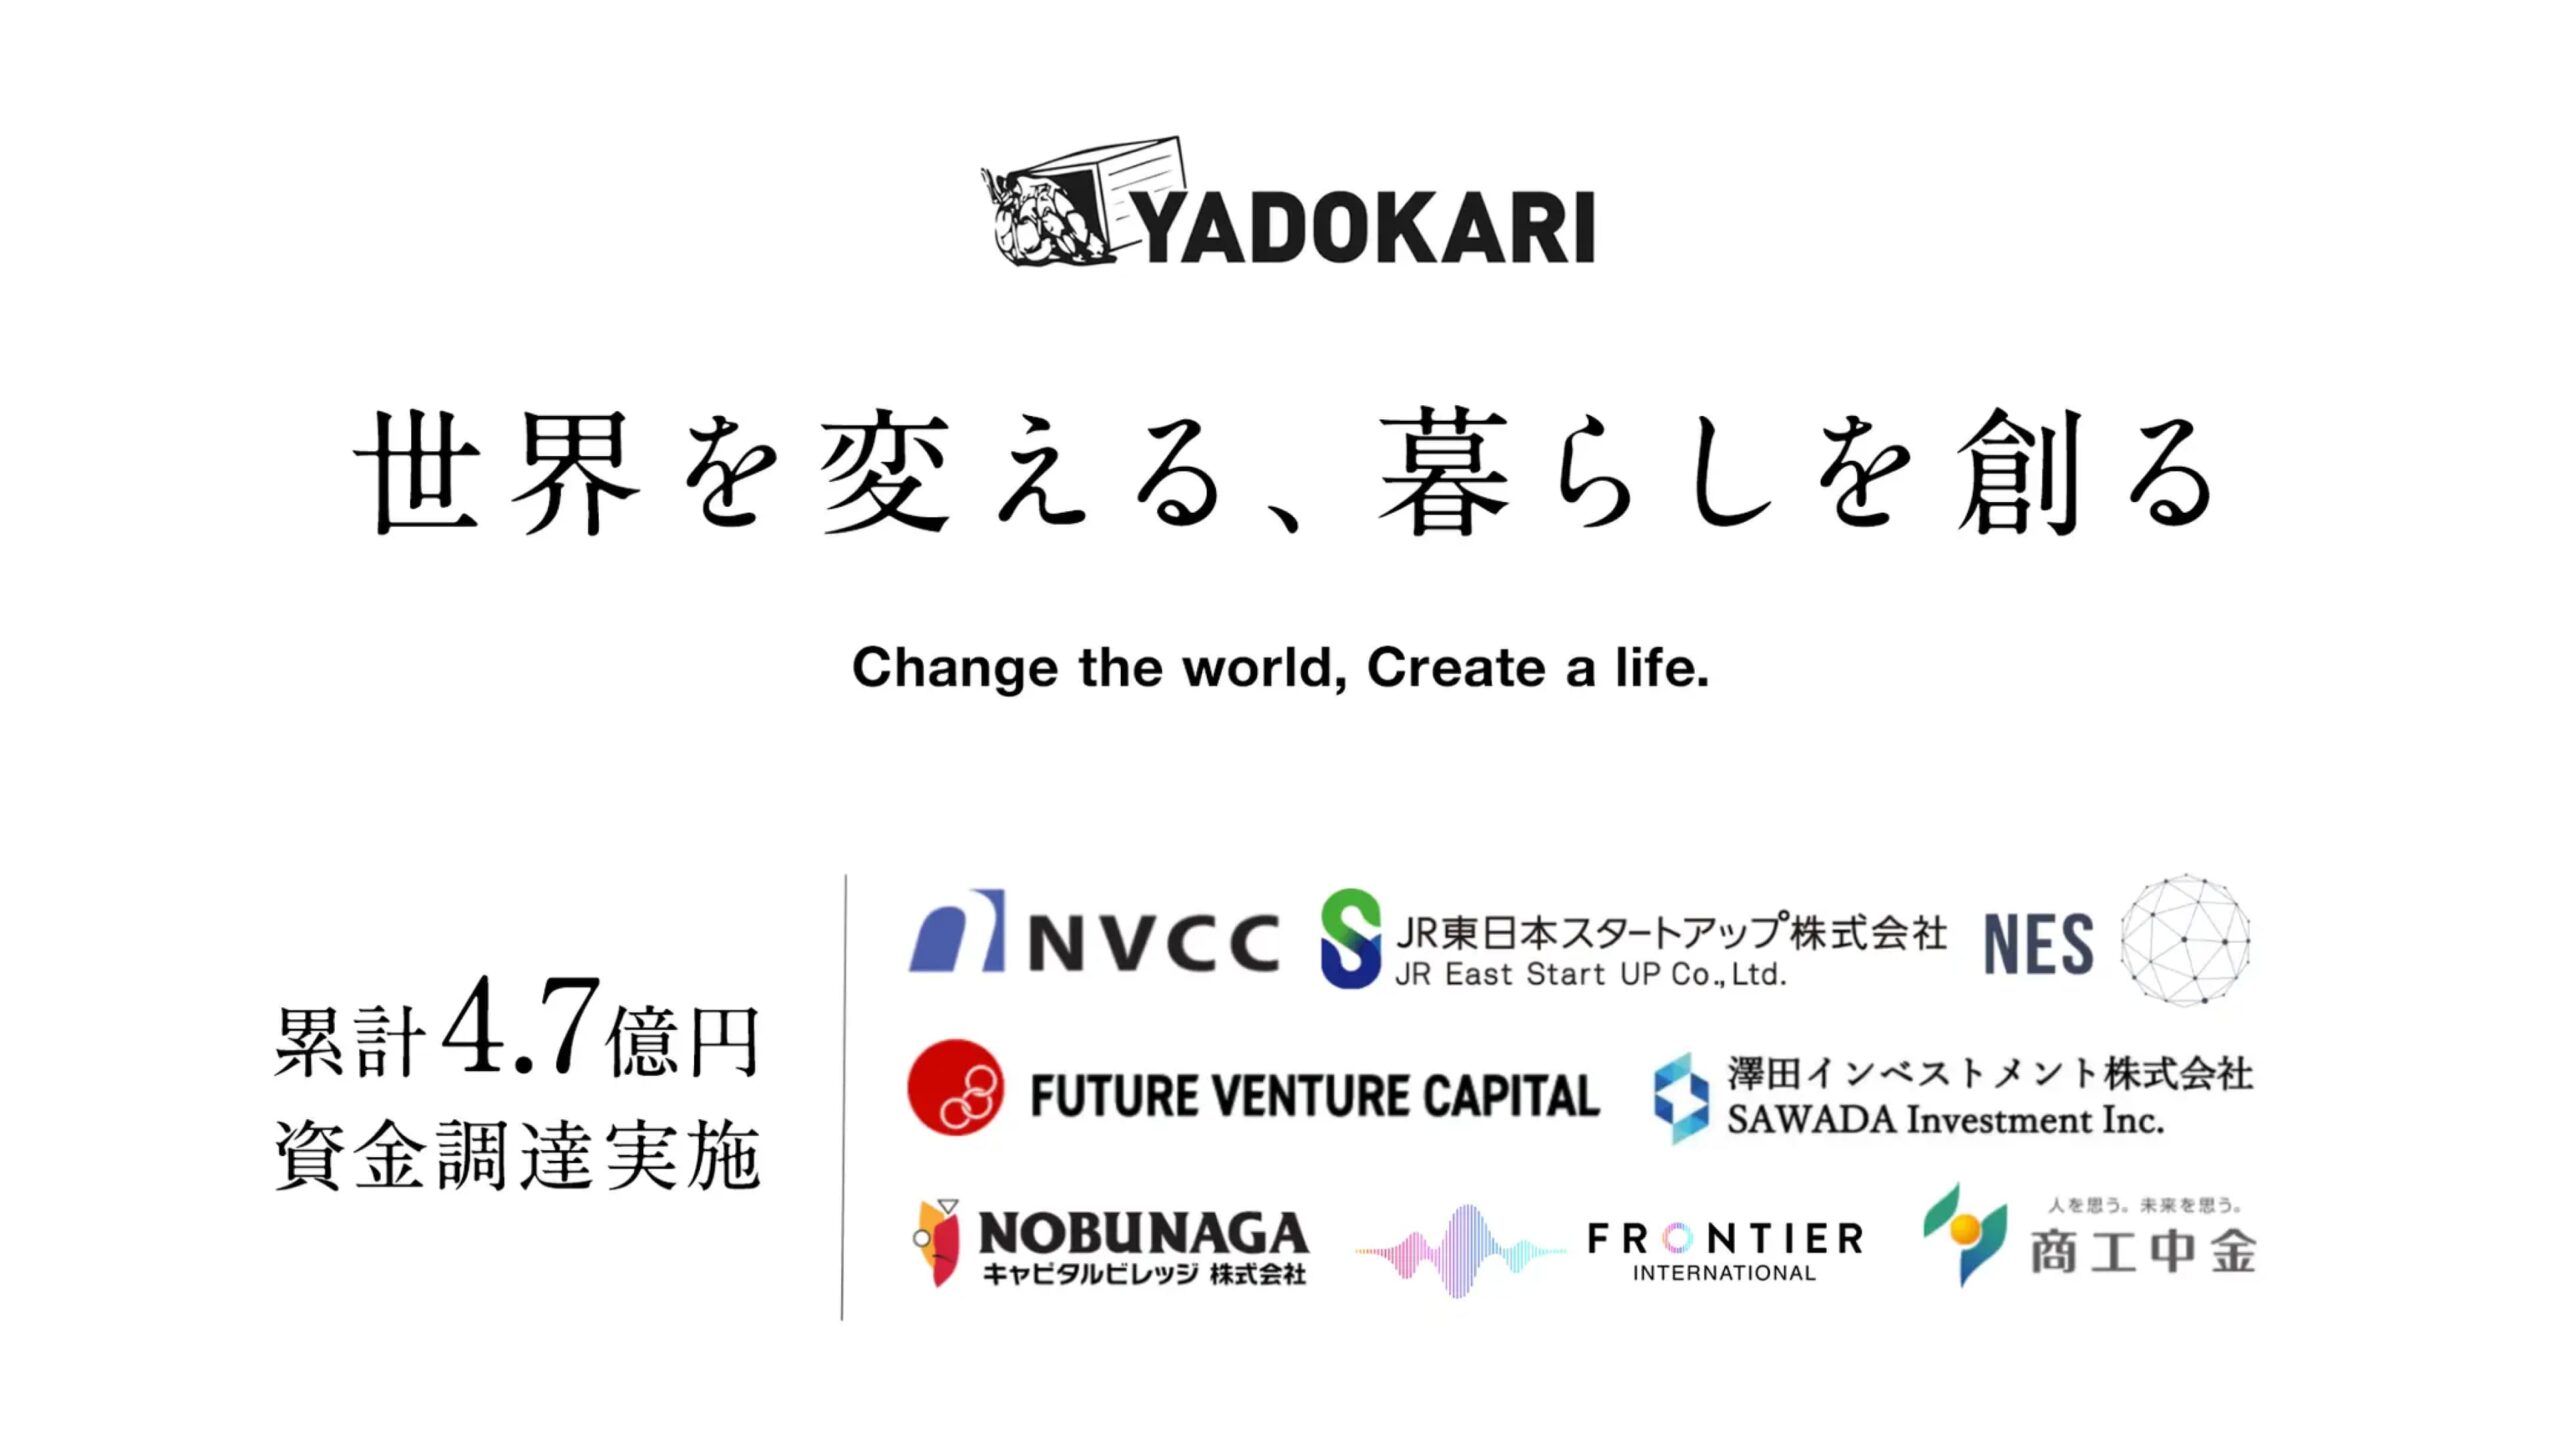 可動産プラットフォーム事業を展開するYADOKARI株式会社、シリーズBにて約3.2億円を調達ー調達額累計4.7億円に